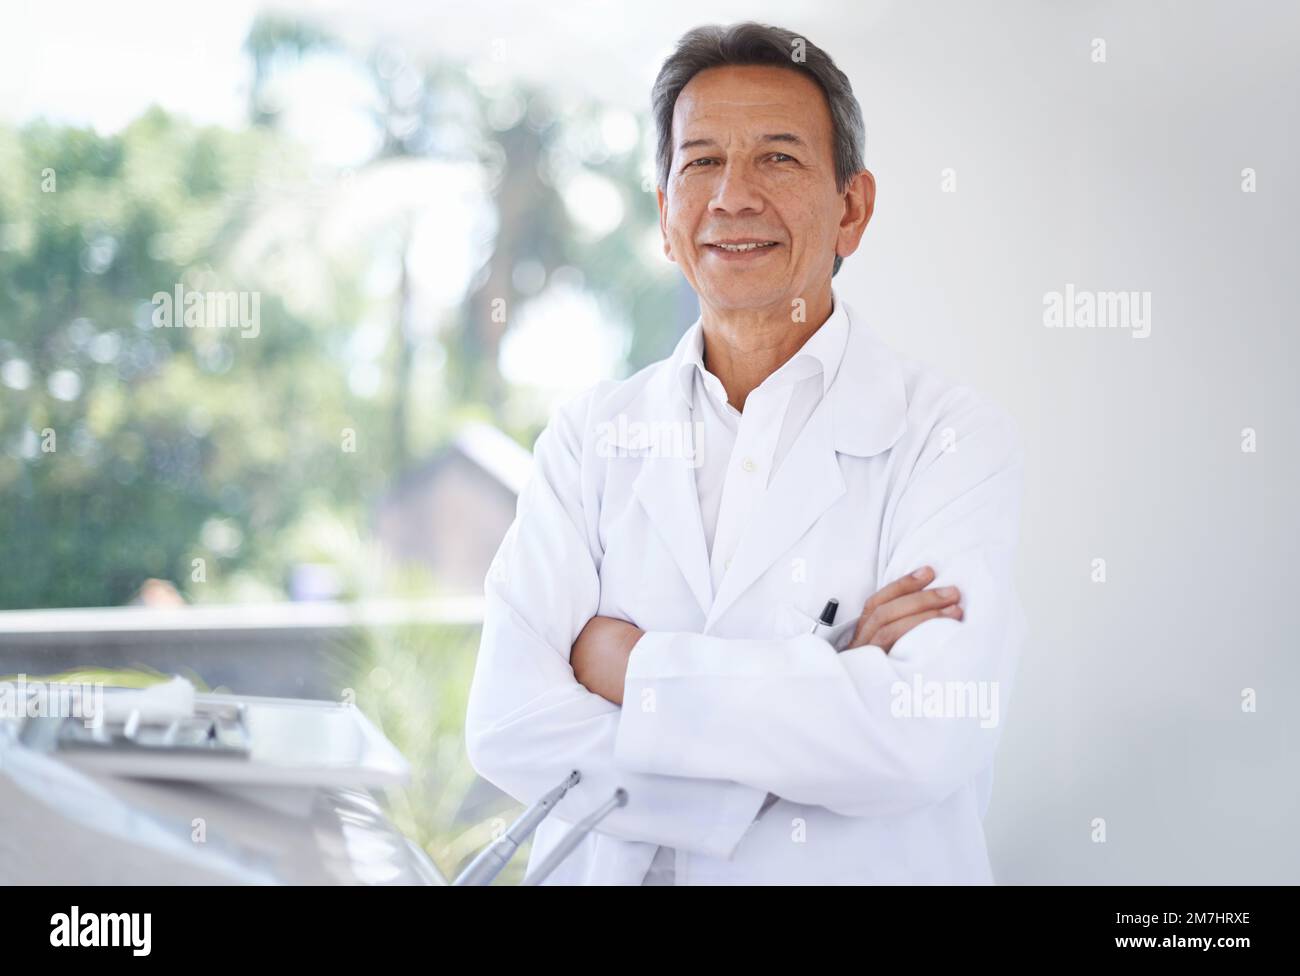 Faccia amichevole del vostro dentista della famiglia. Ritratto di un chirurgo maschio maturo in piedi in ospedale. Foto Stock